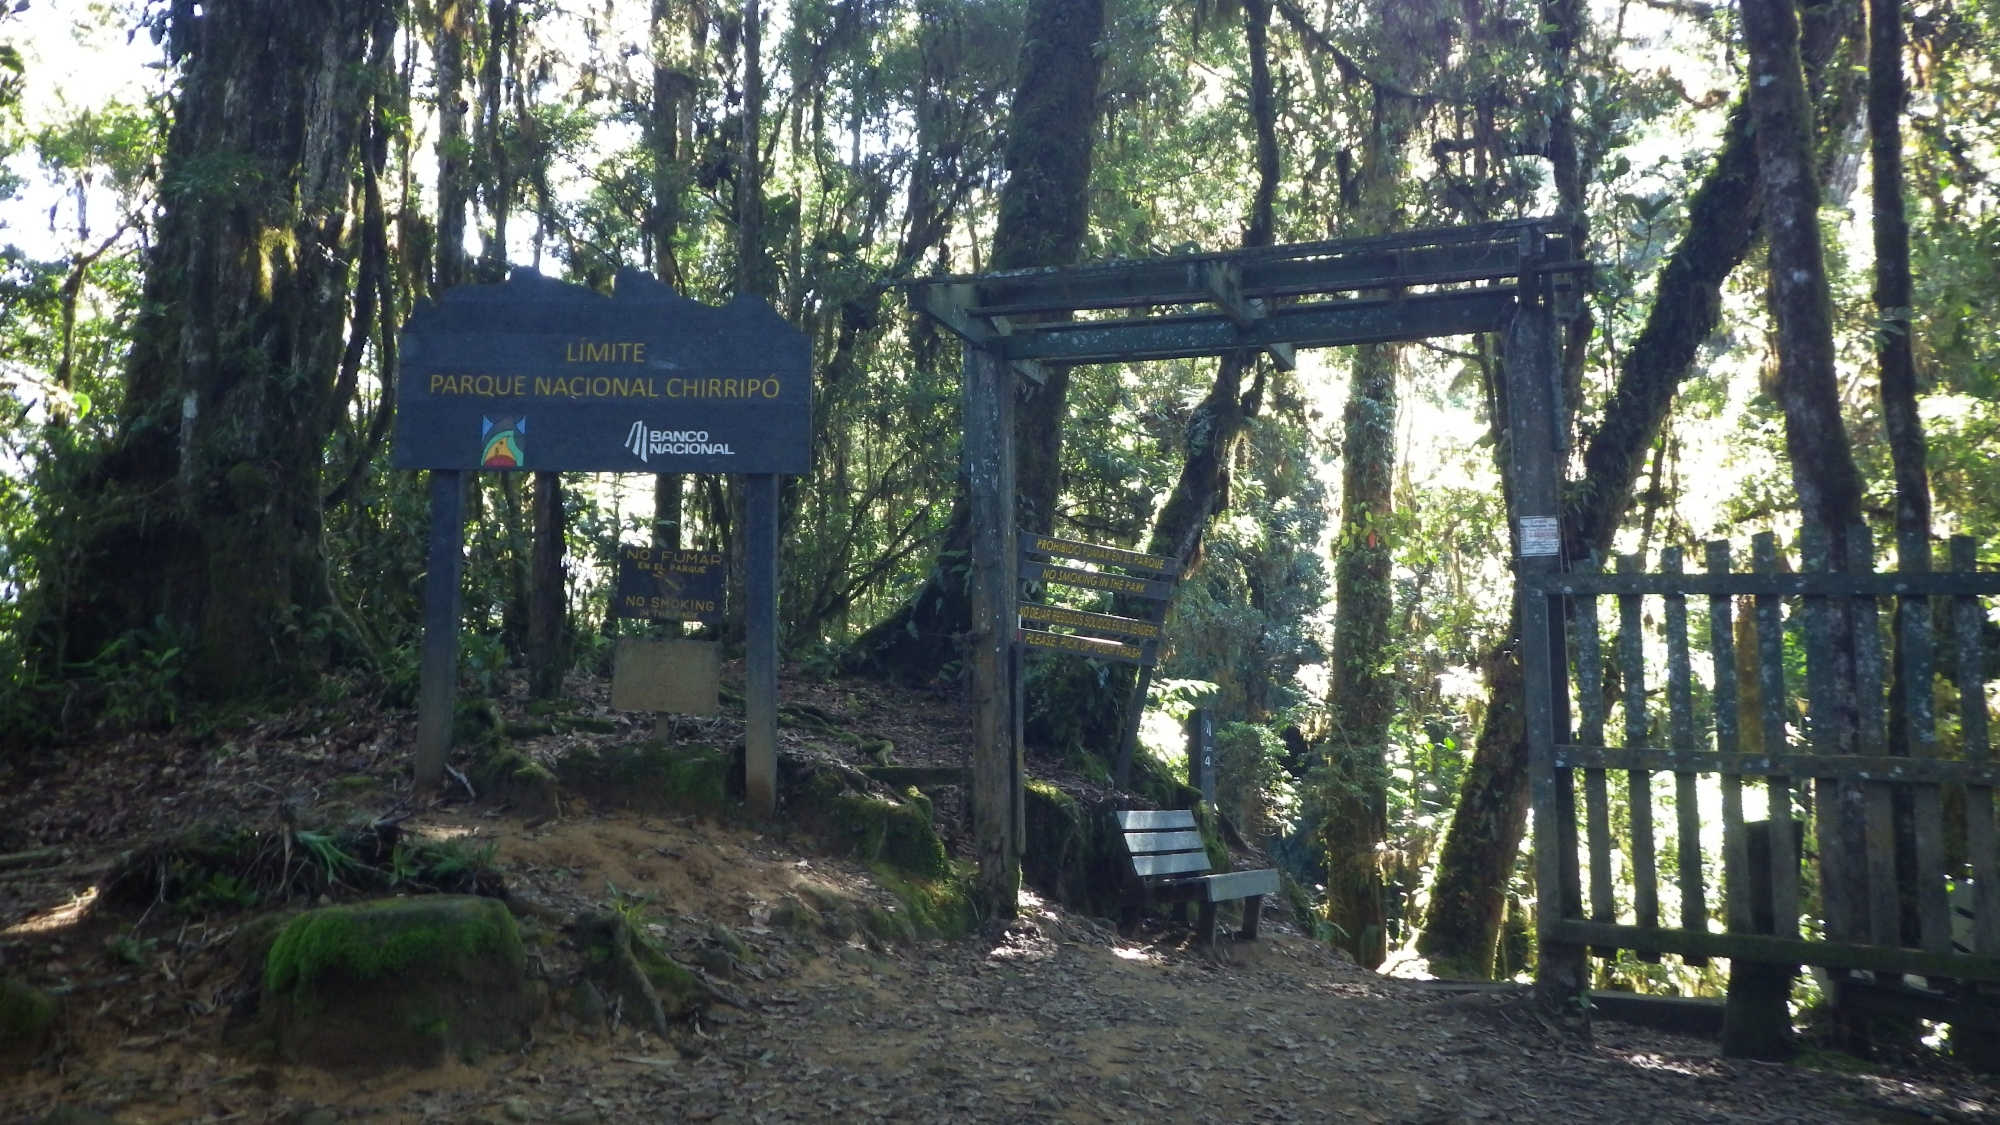 Der Eingang des Parque Nacional Chirripó.